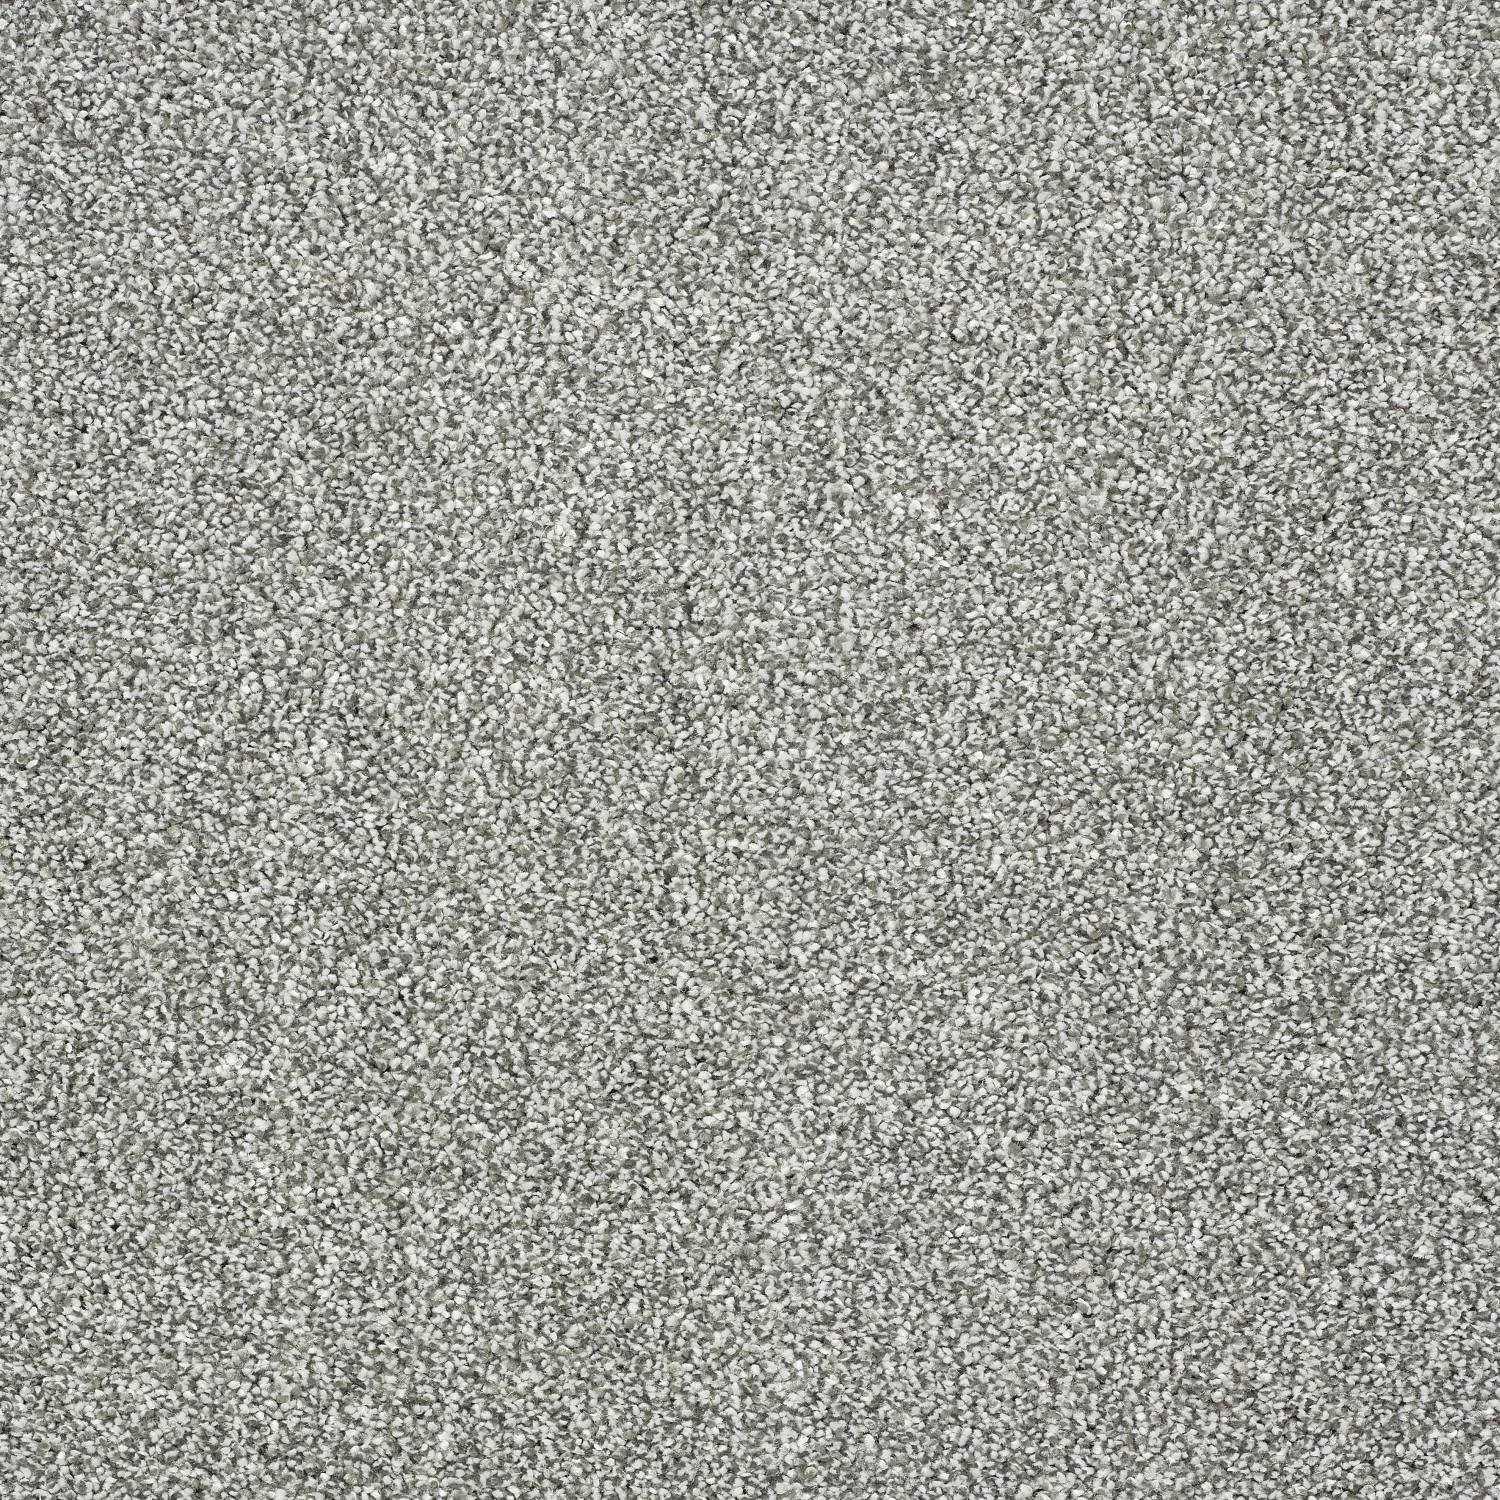 Stainfree Panache Twist Carpet - 06 Silver Dollar